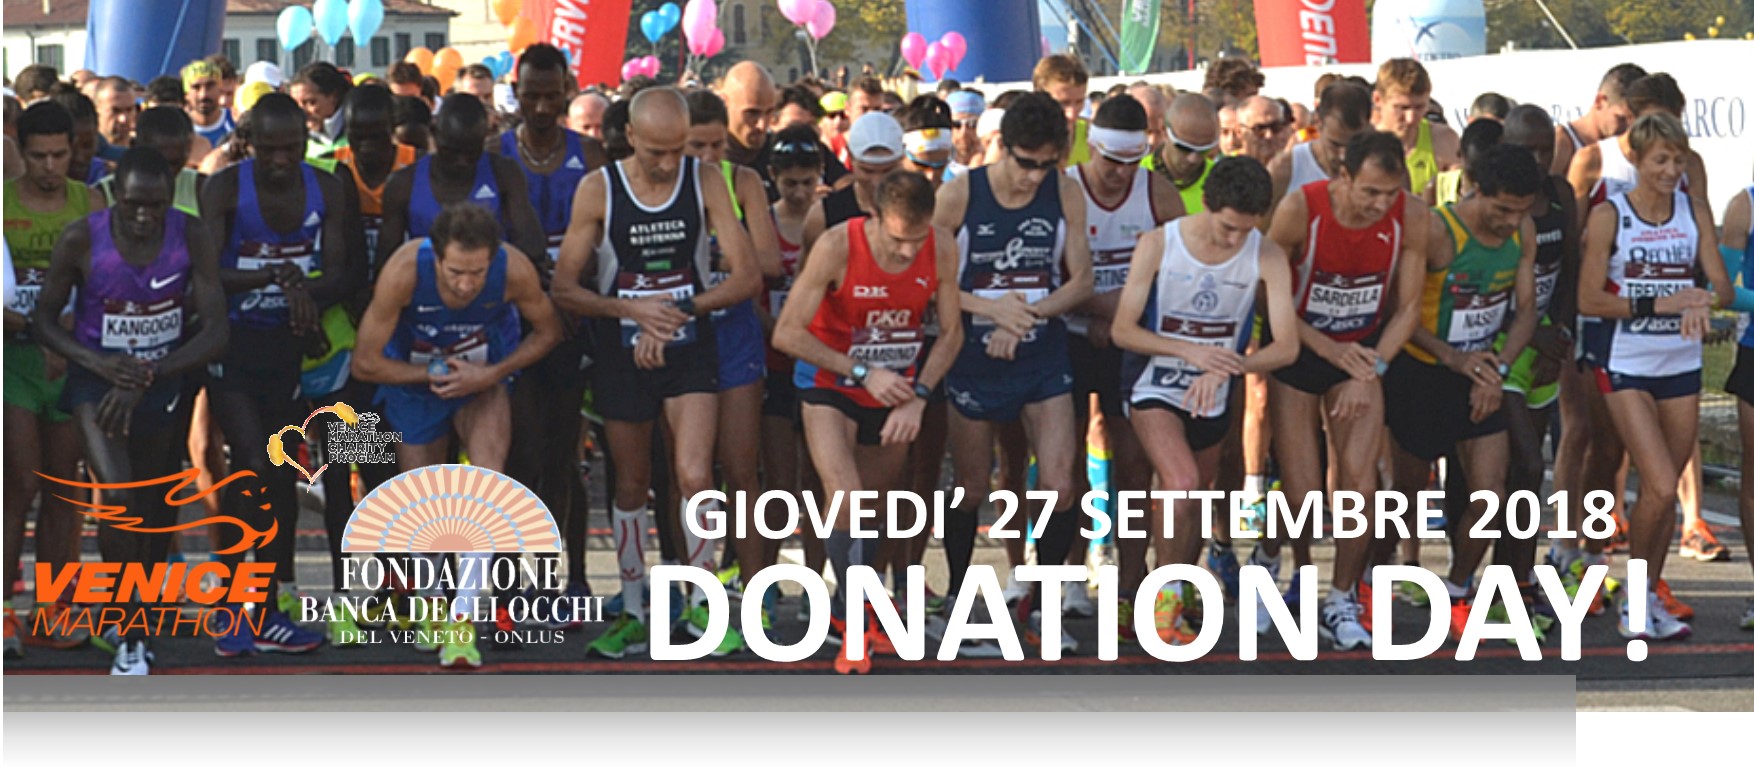 Corri per la vista Run for sight 2018-Fondazione Banca degli Occhi